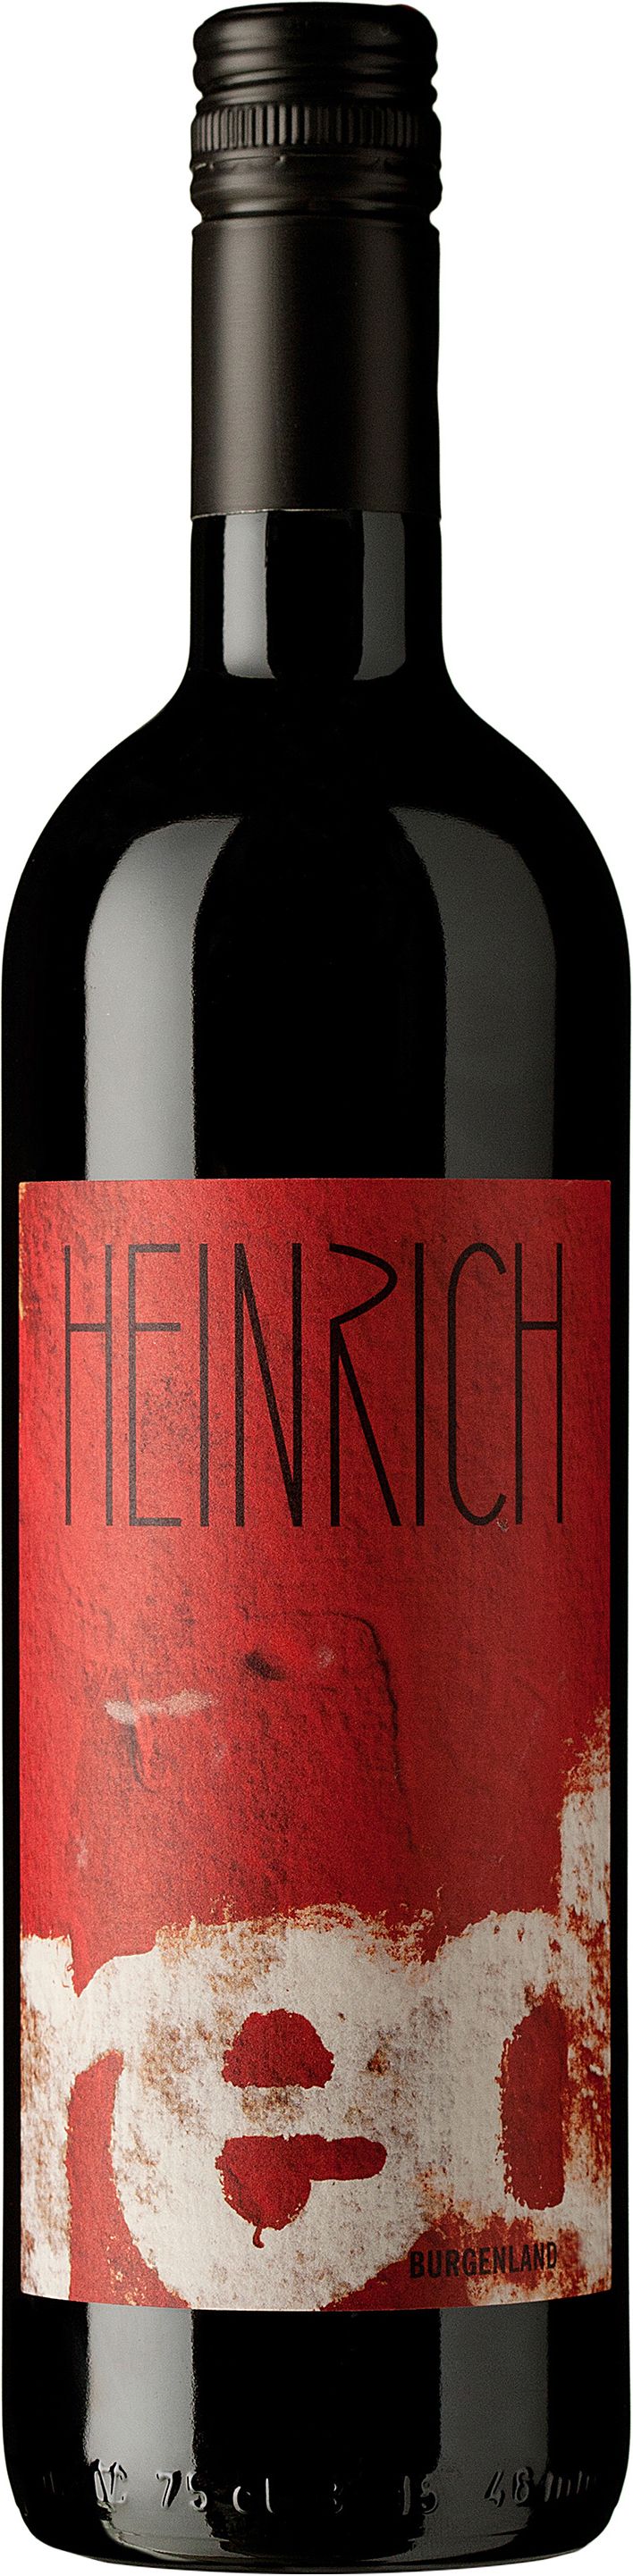 Heinrich, Red, 2015